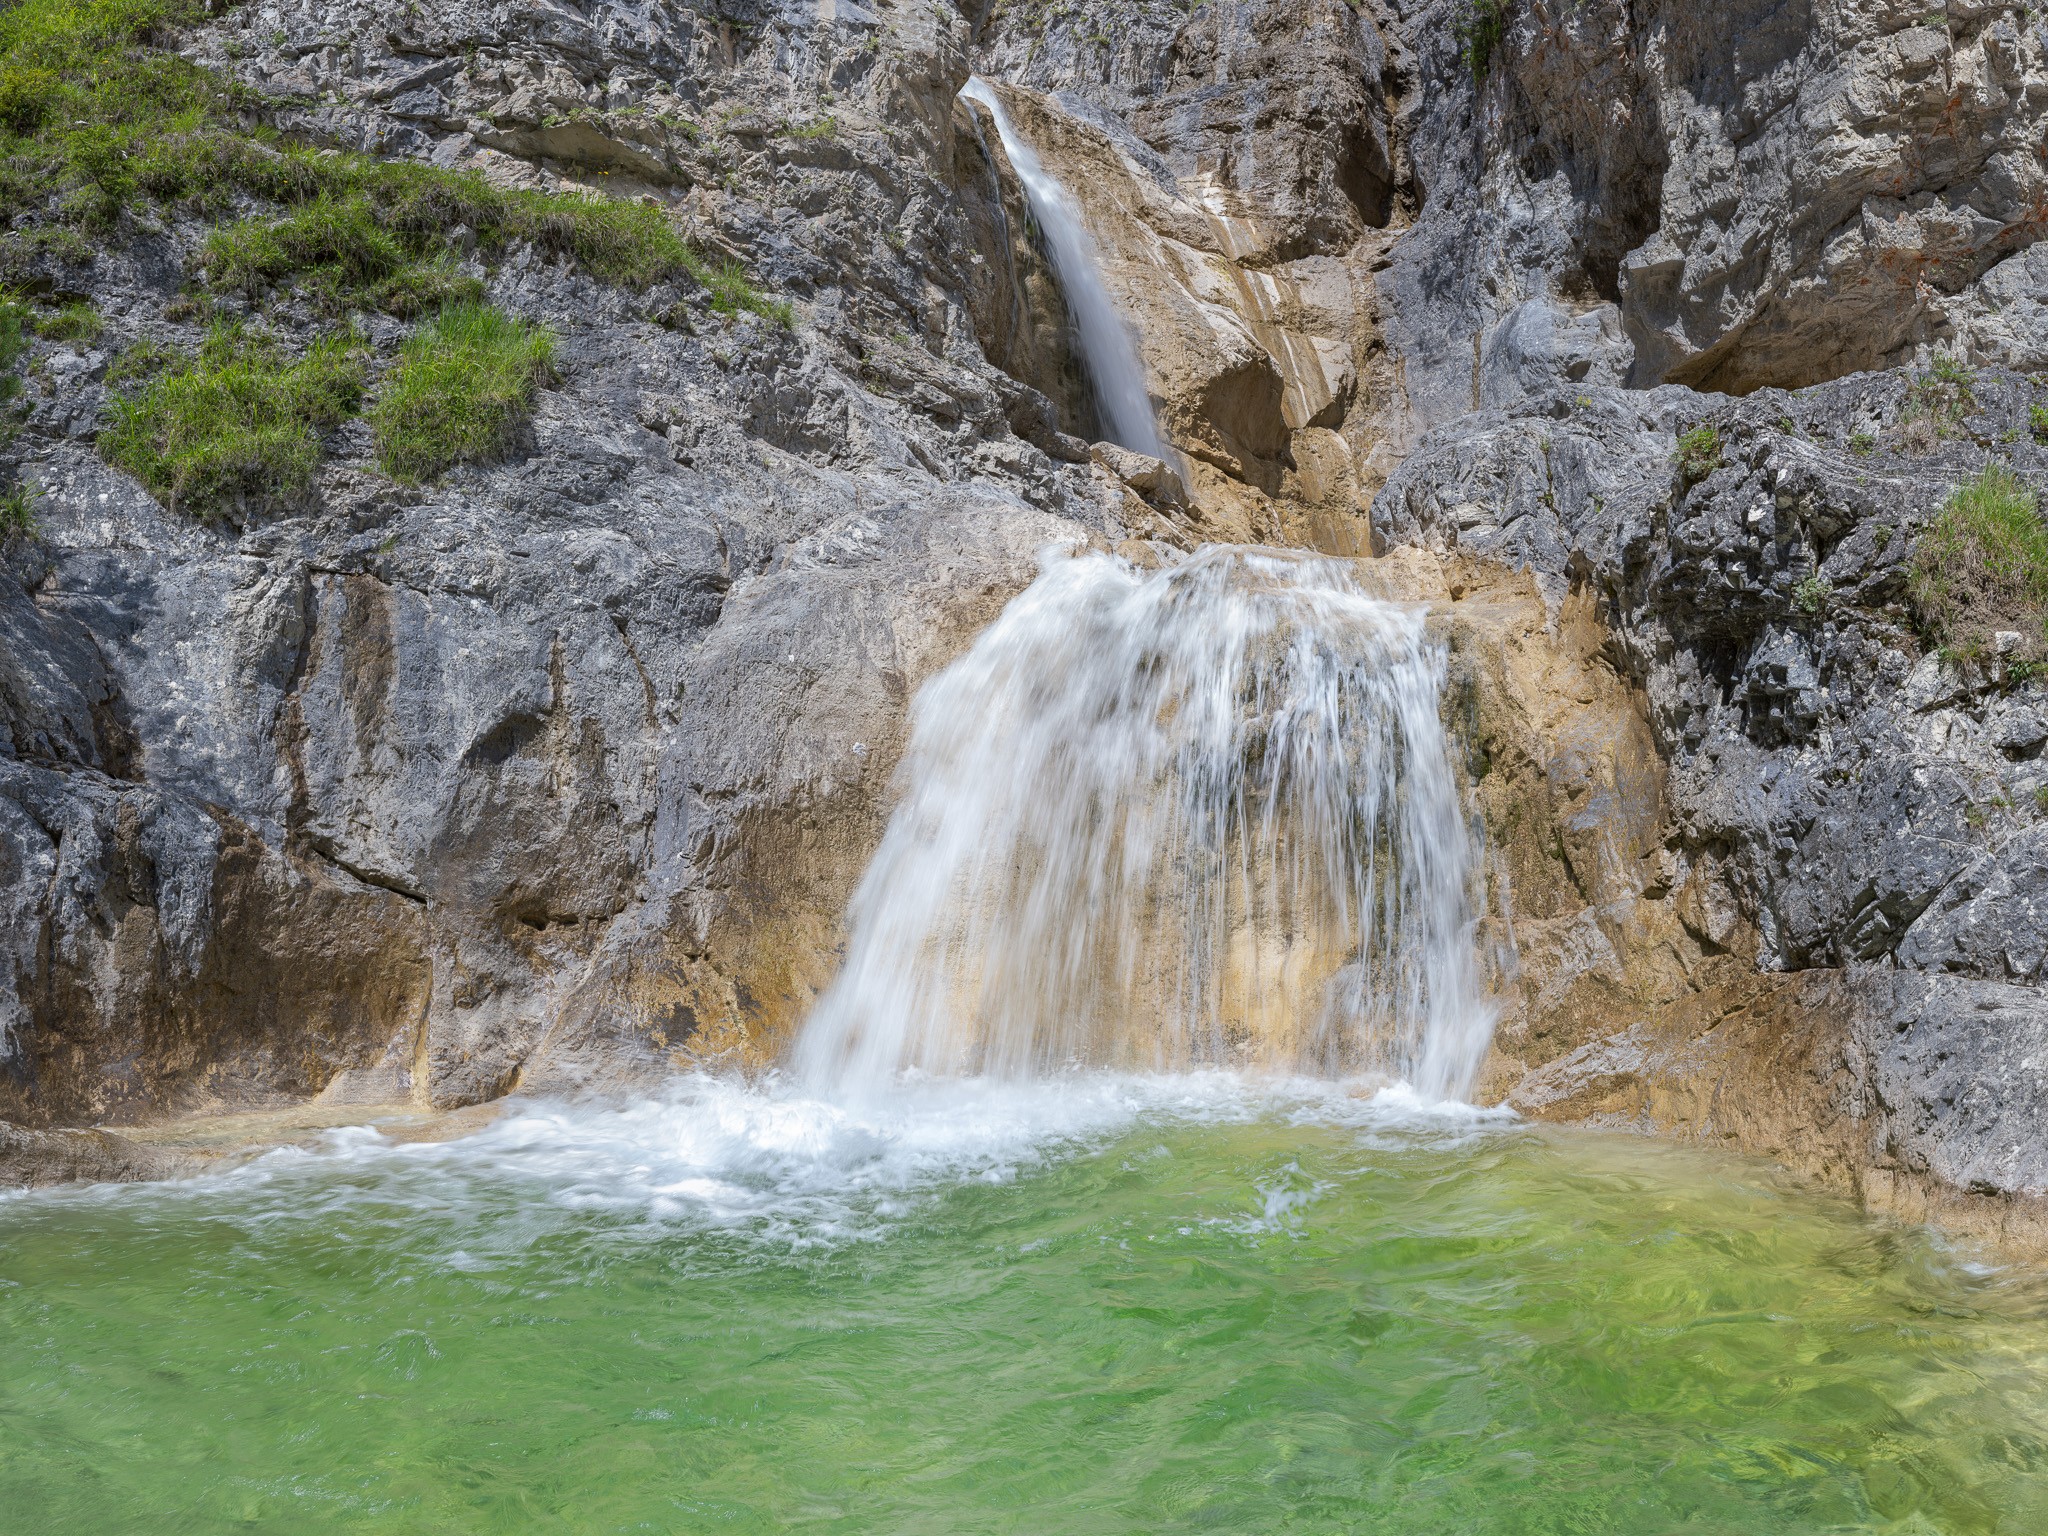 Heller Wasserfall - Kalkfelsen. Gumpe (Pool) unter einem Wasserfall, die zum Baden einlädt.